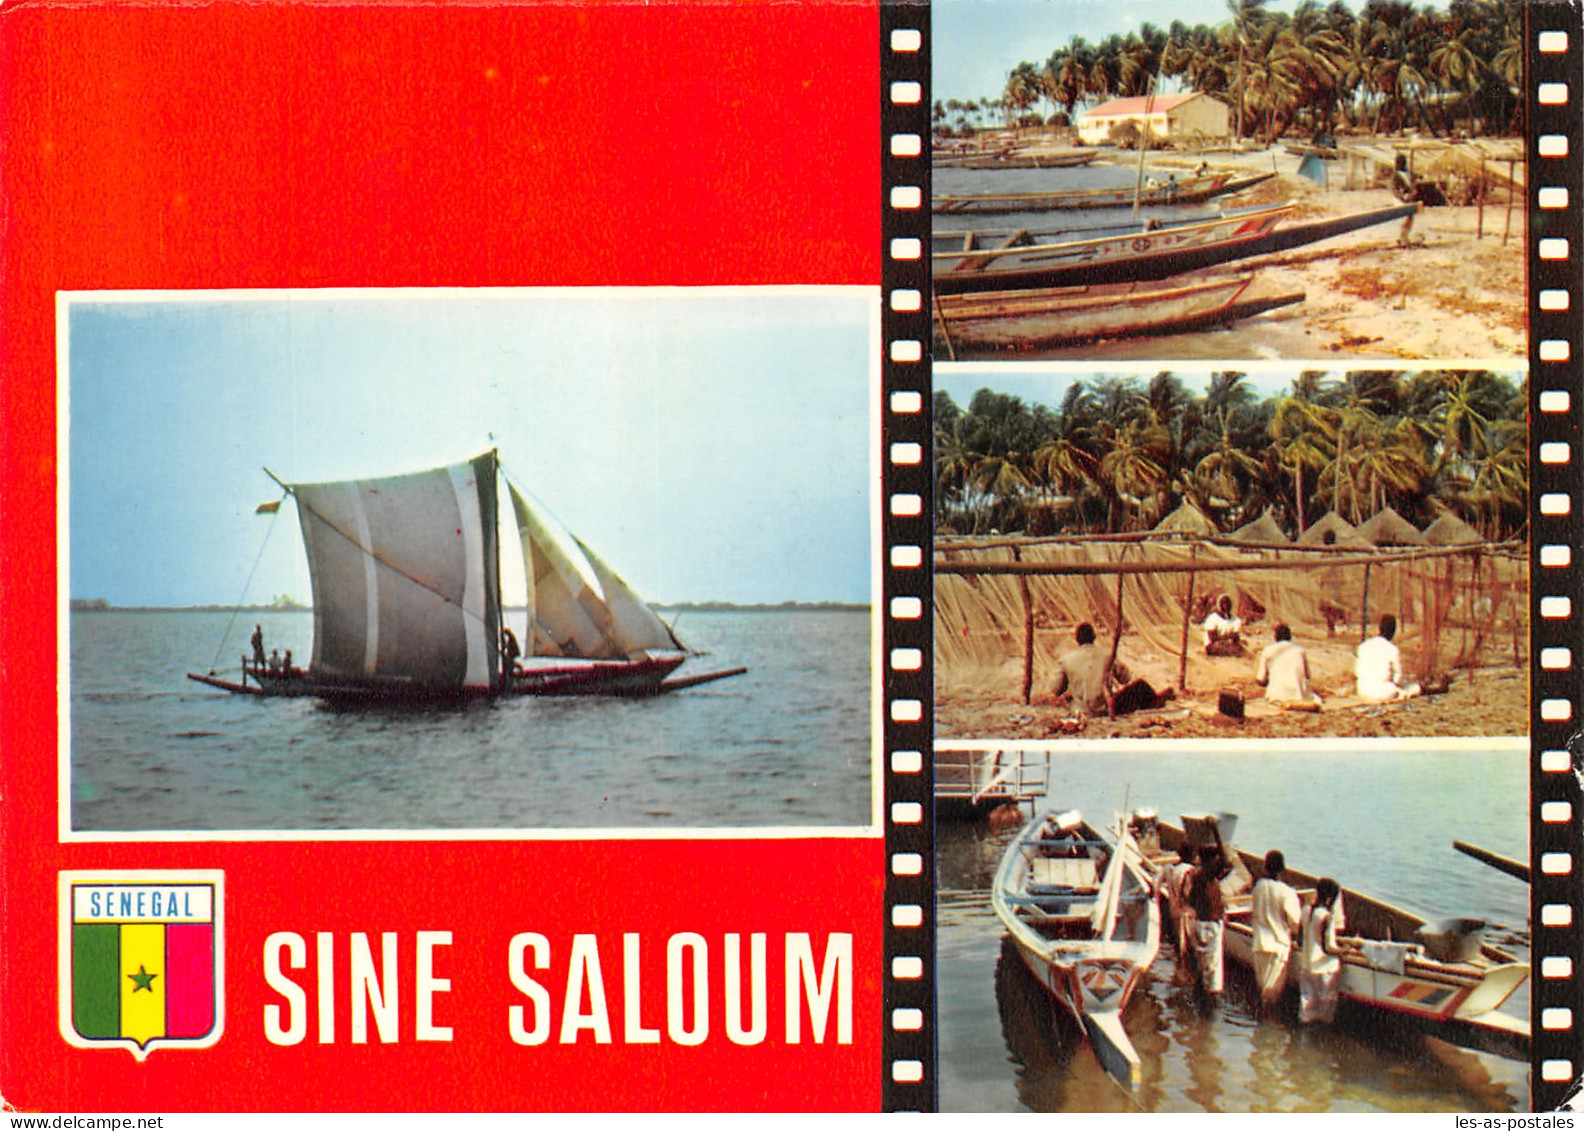 SENEGAL SINE SALOUM - Senegal